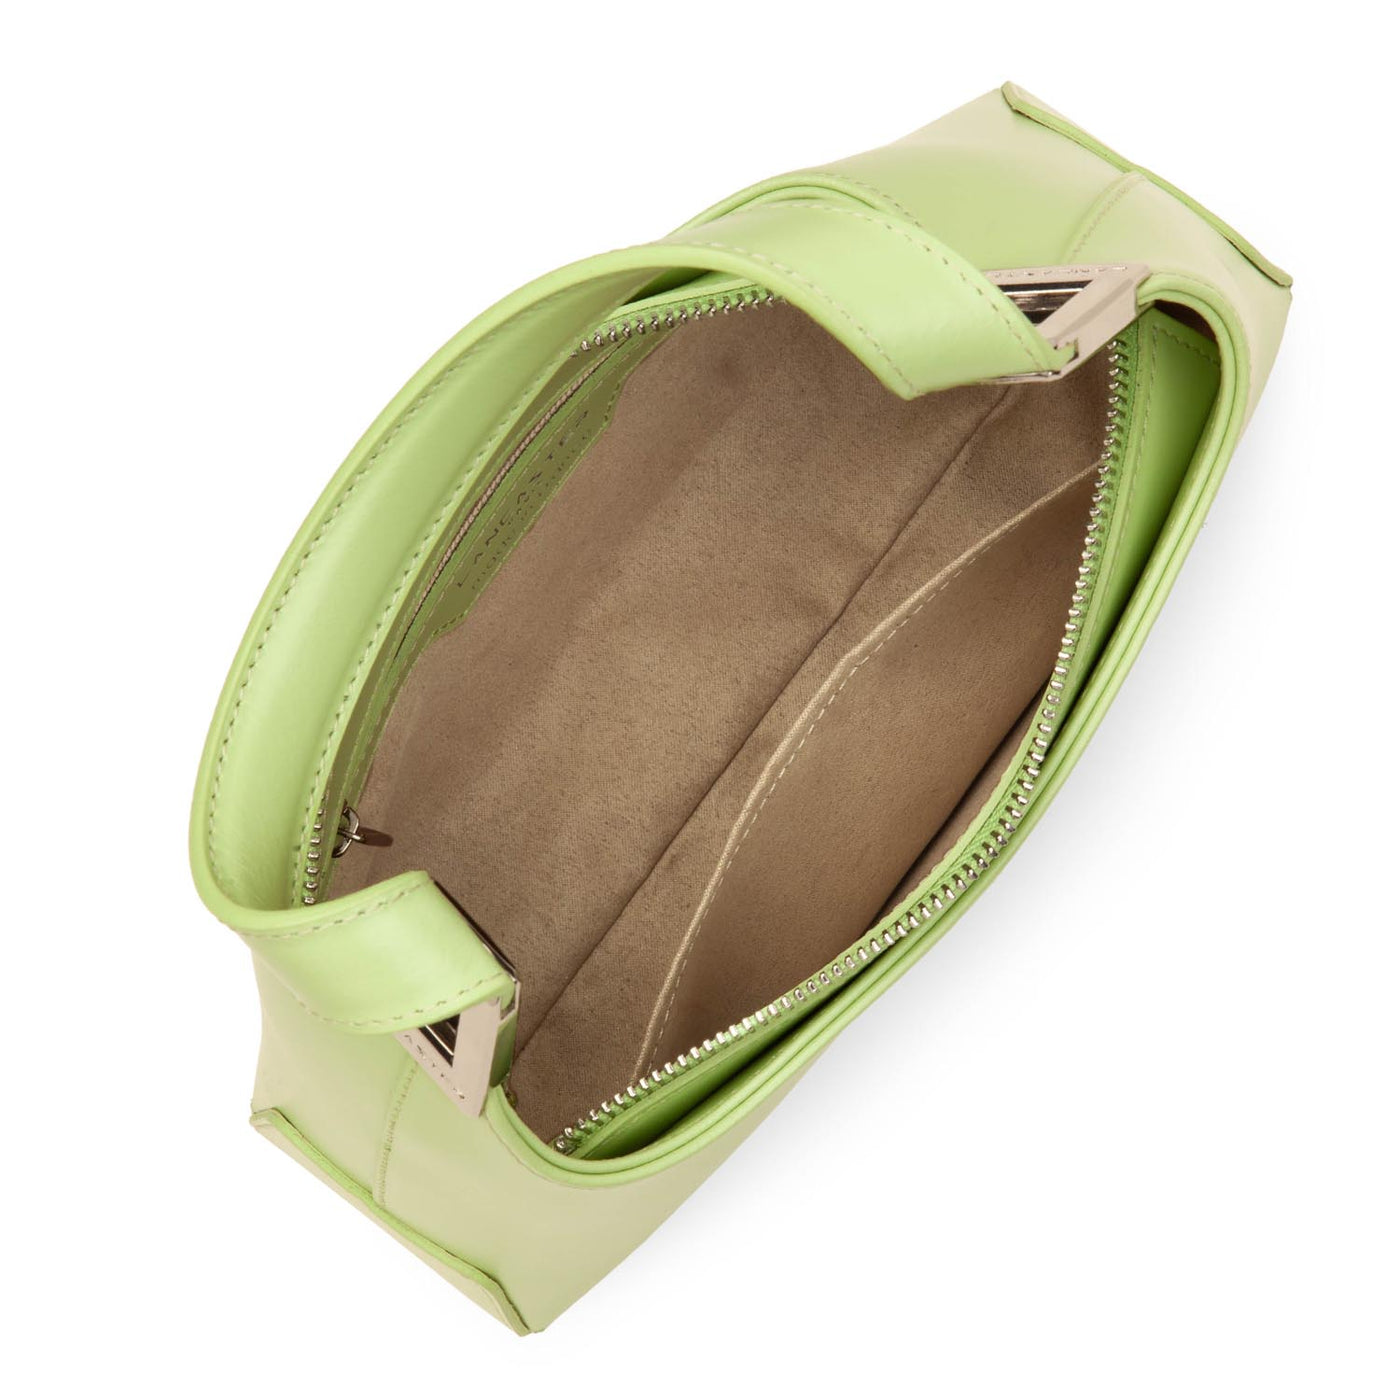 small baguette bag - suave ace #couleur_vert-clair